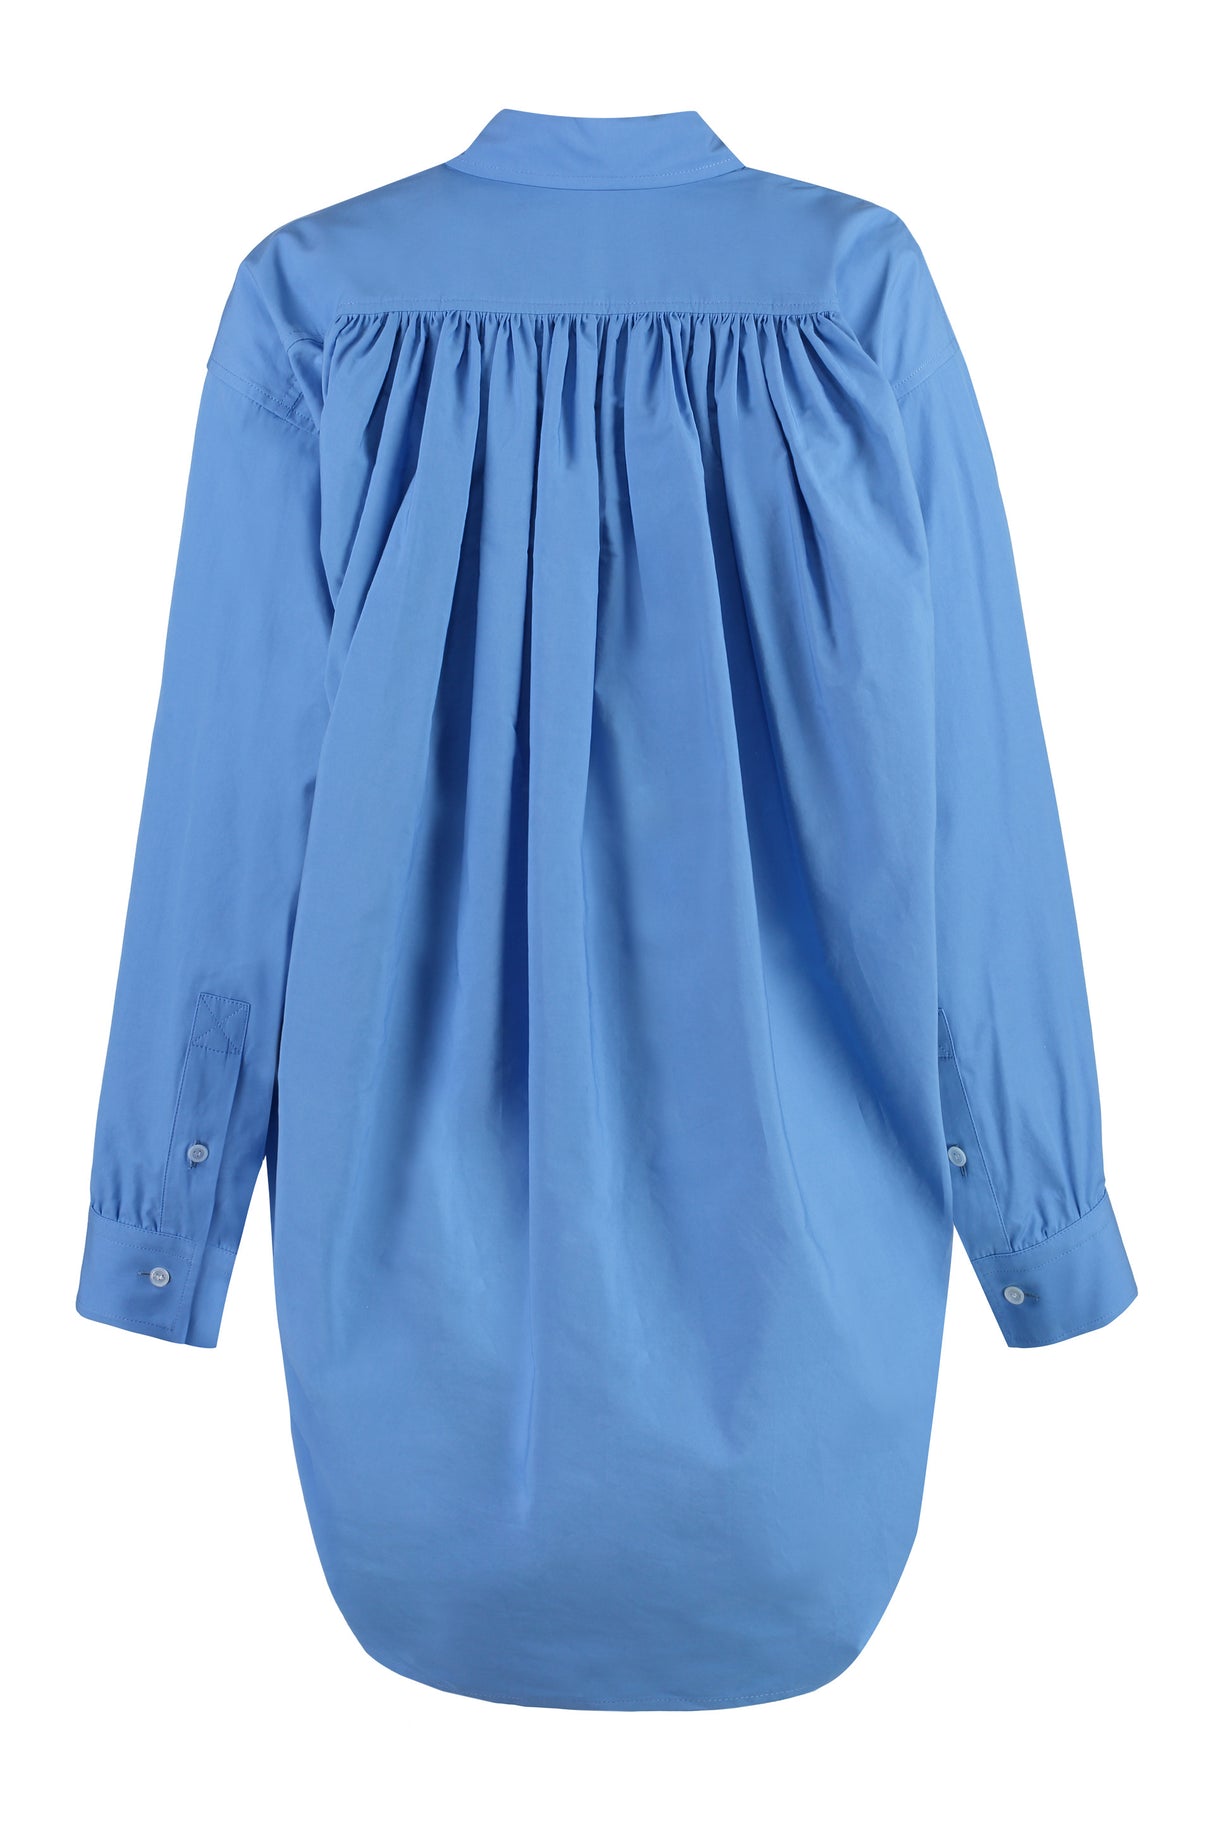 BOTTEGA VENETA Light Blue Asymmetric Oversized Shirt for Women